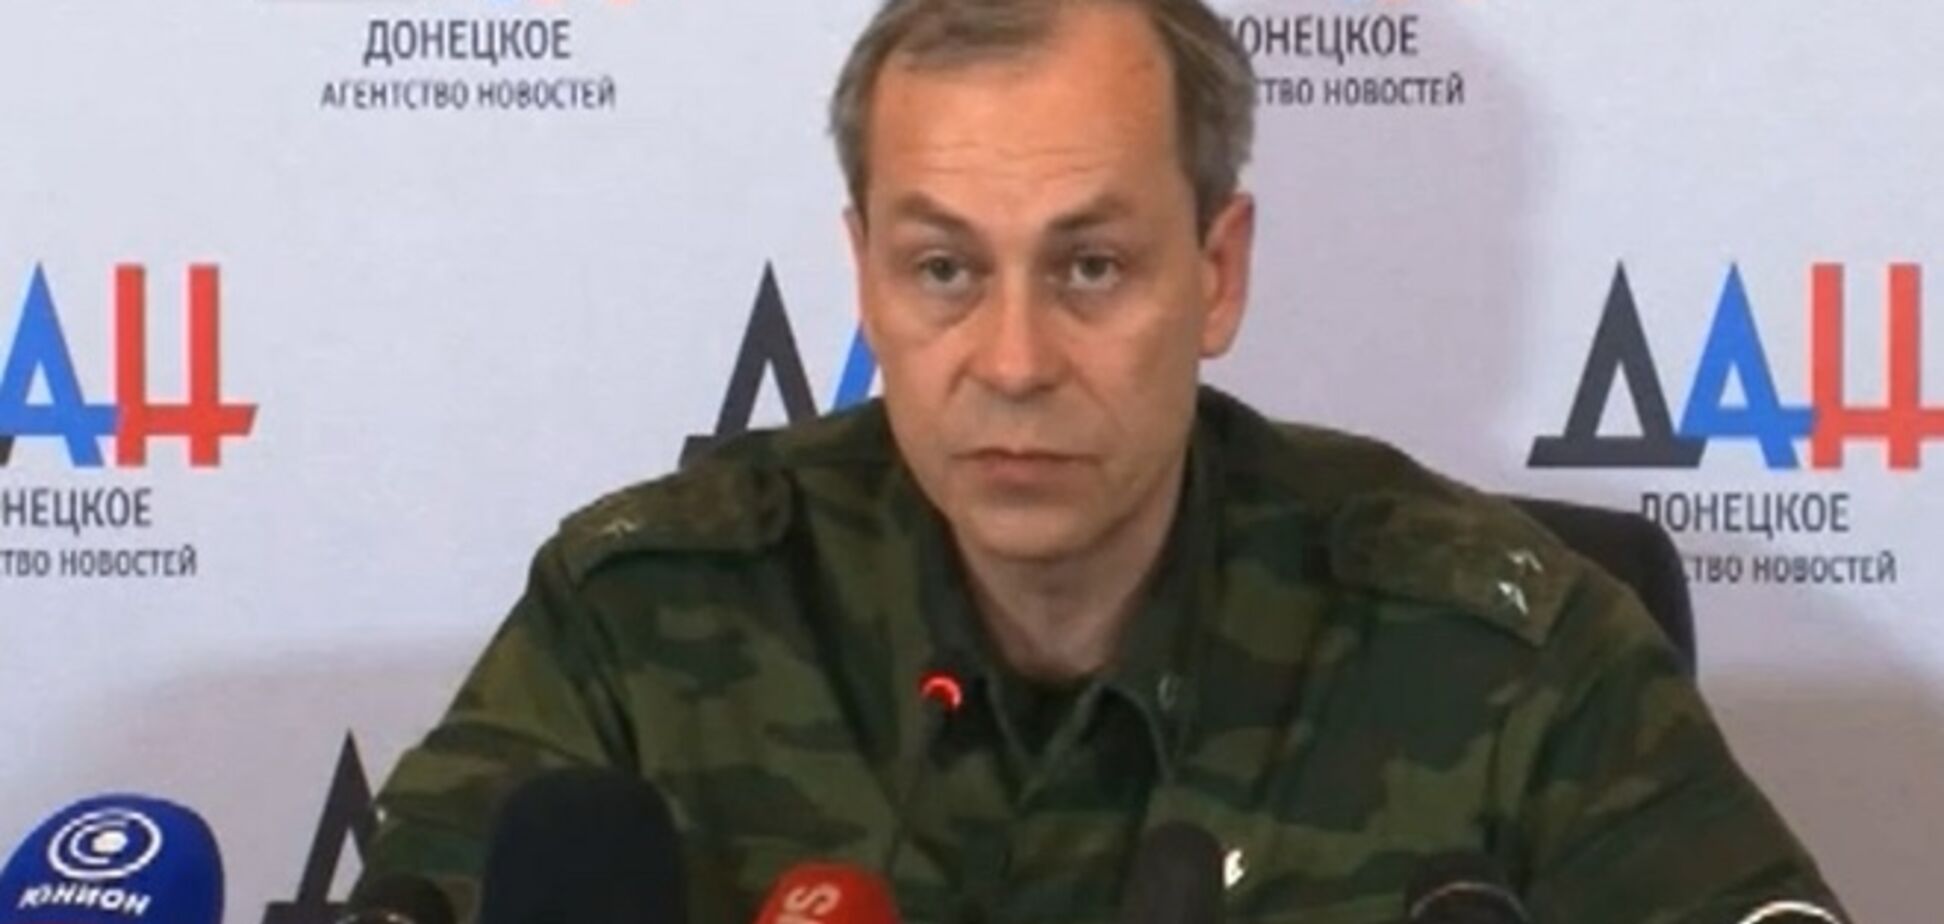 Боевики 'ДНР' пригрозили выйти из минских соглашений